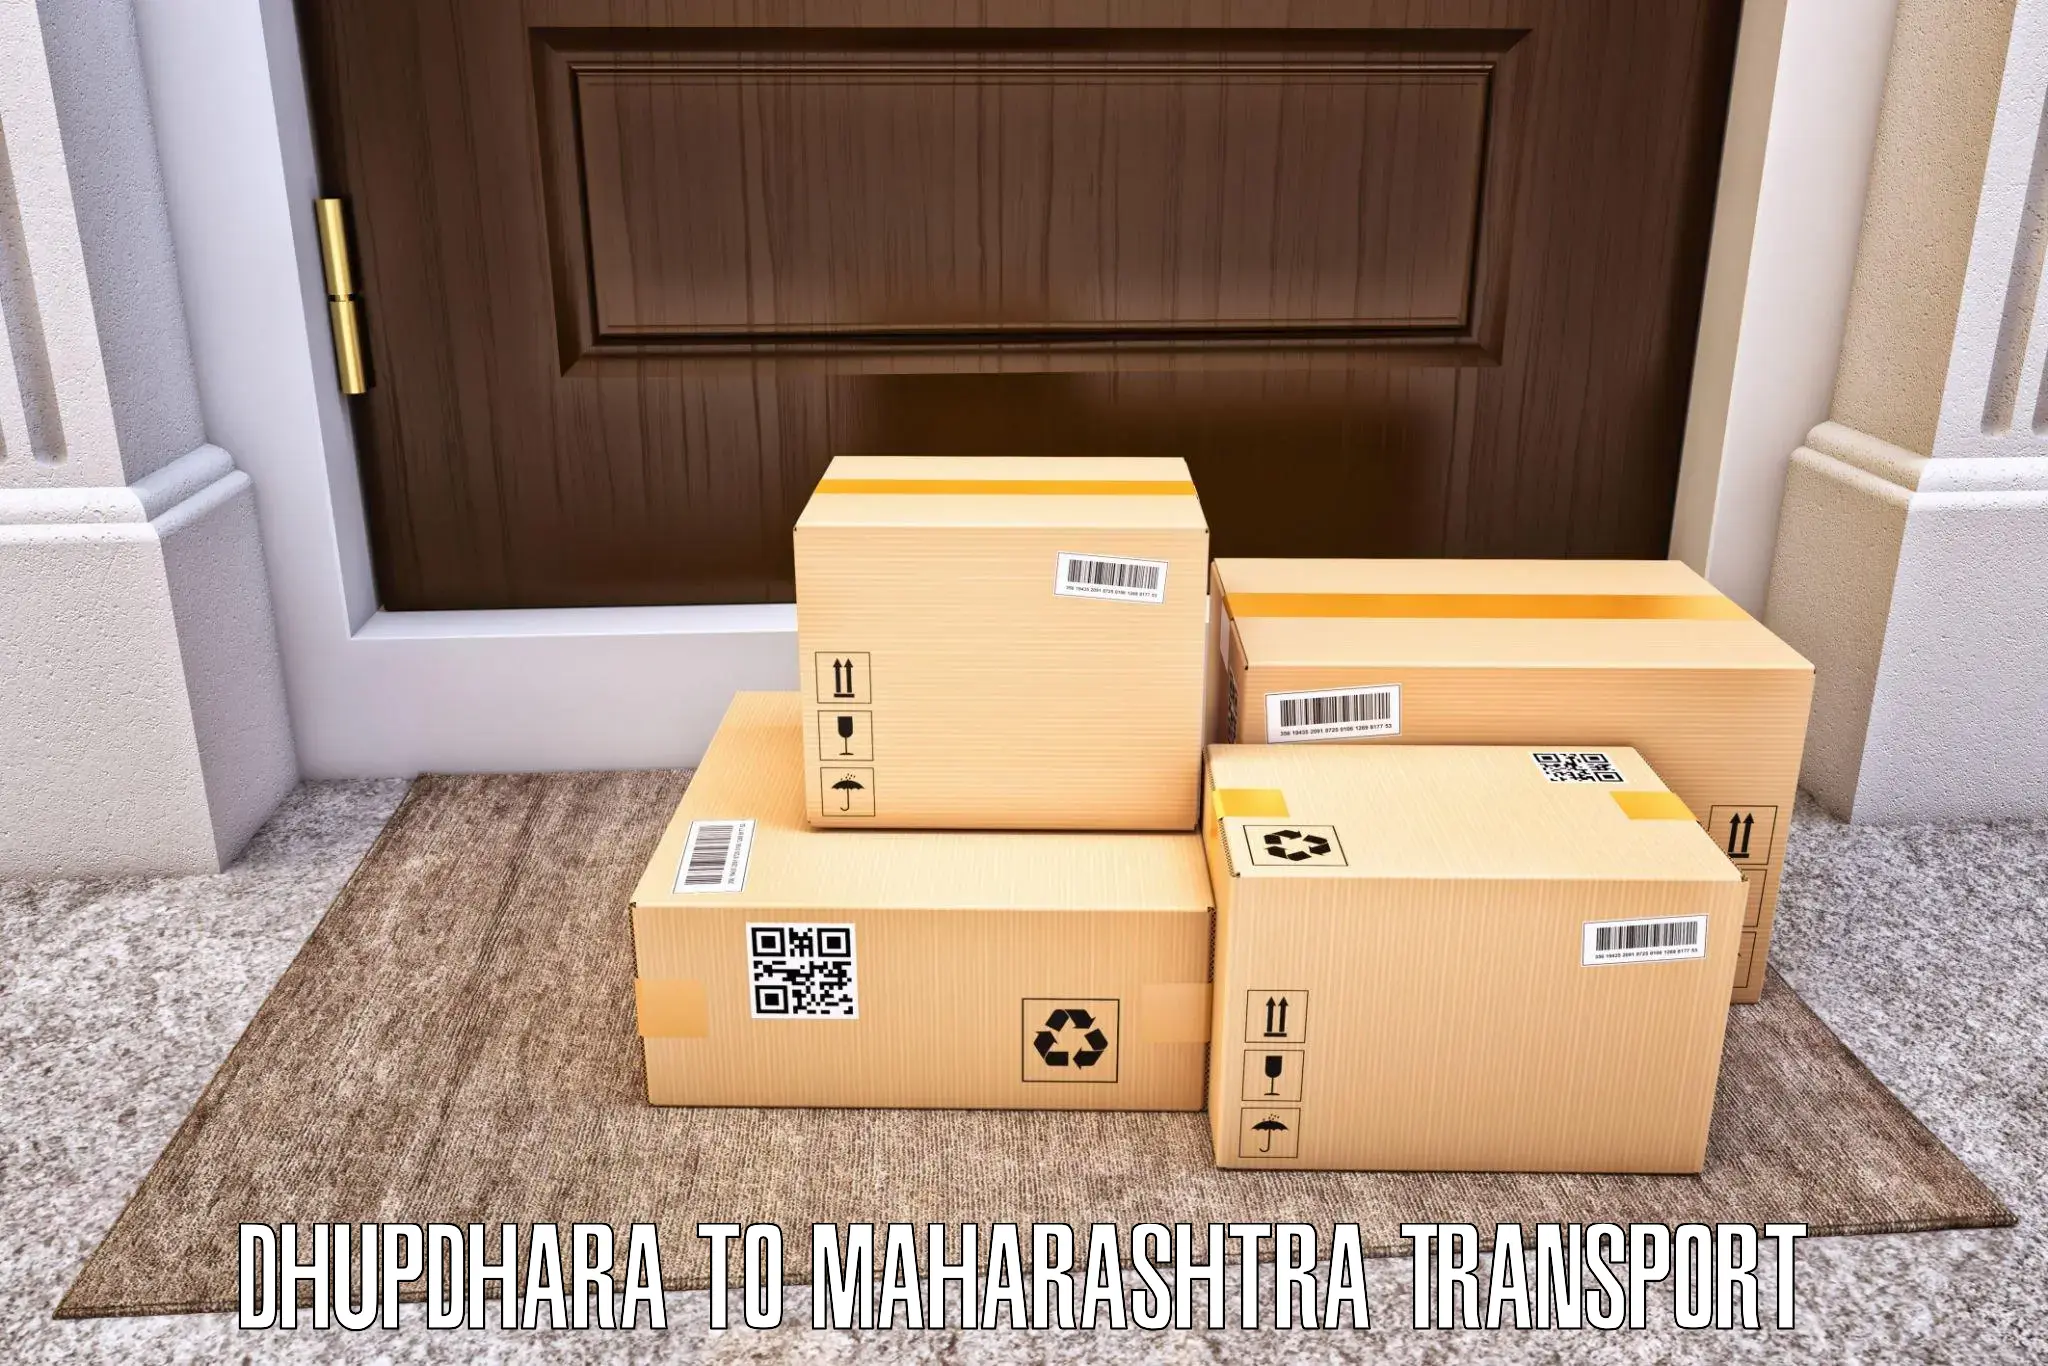 Shipping services Dhupdhara to Sangameshwar